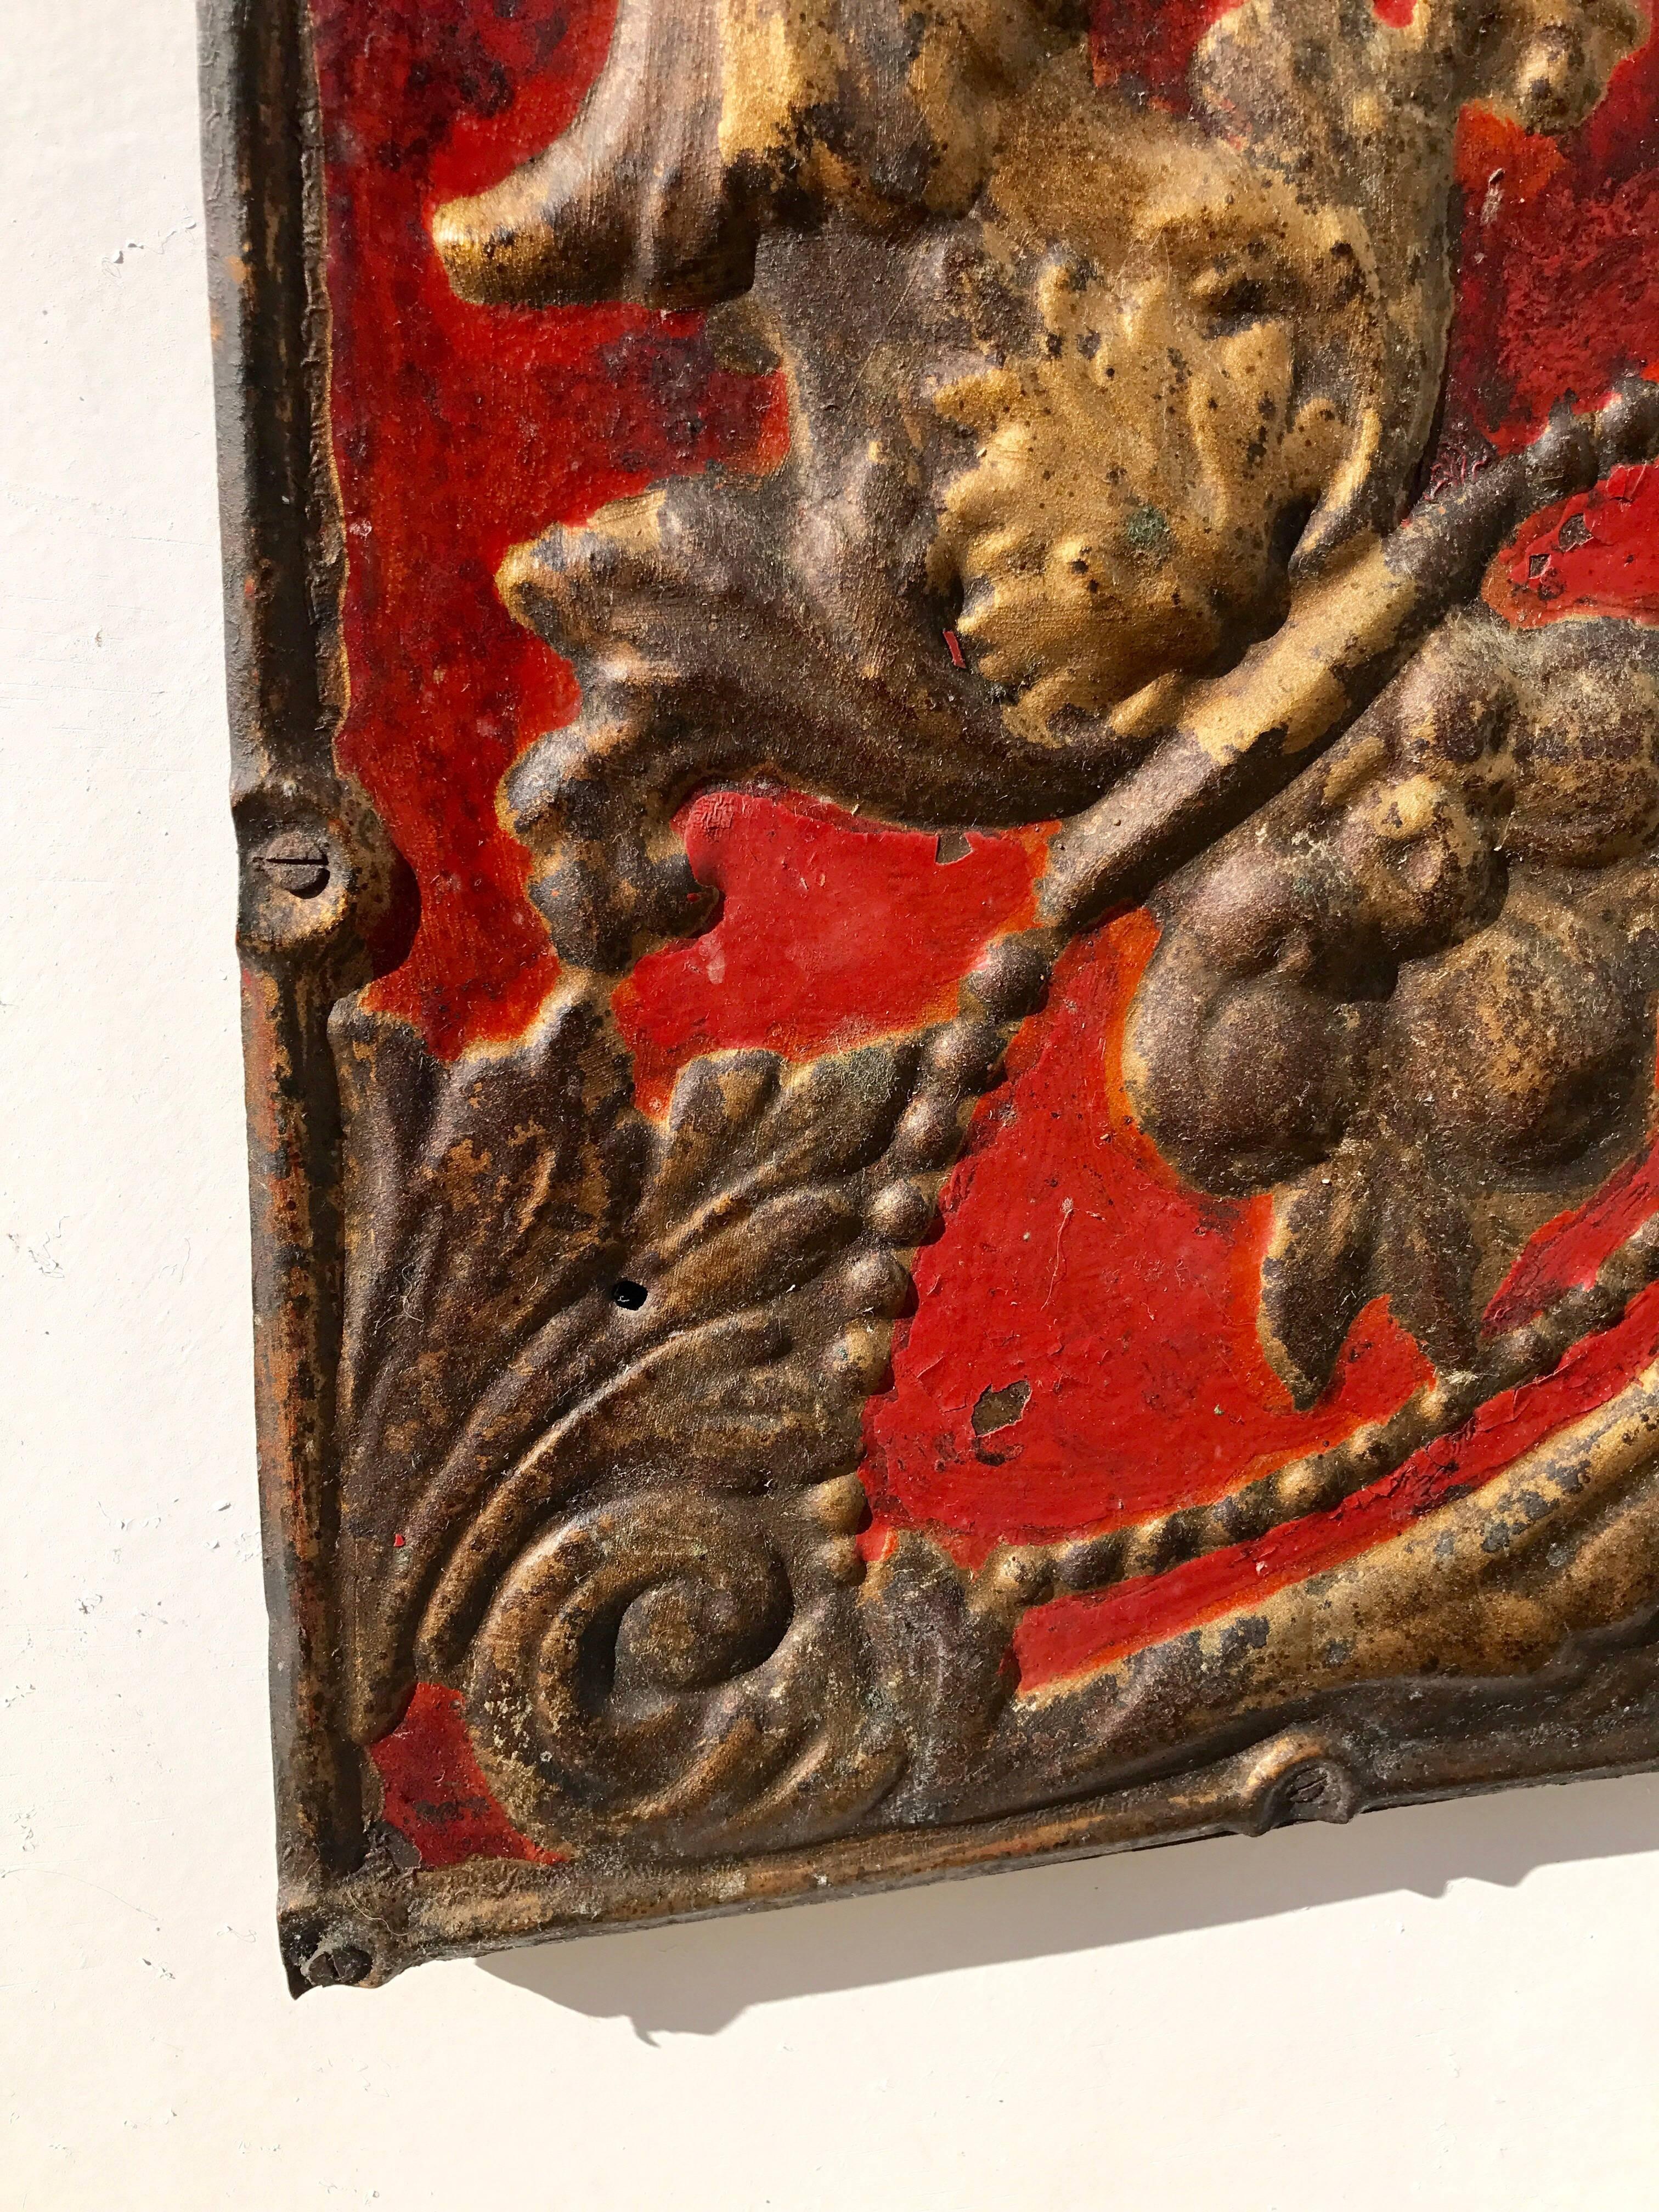 Repoussé Antique Ceiling Tile as Decorative Wall Objet